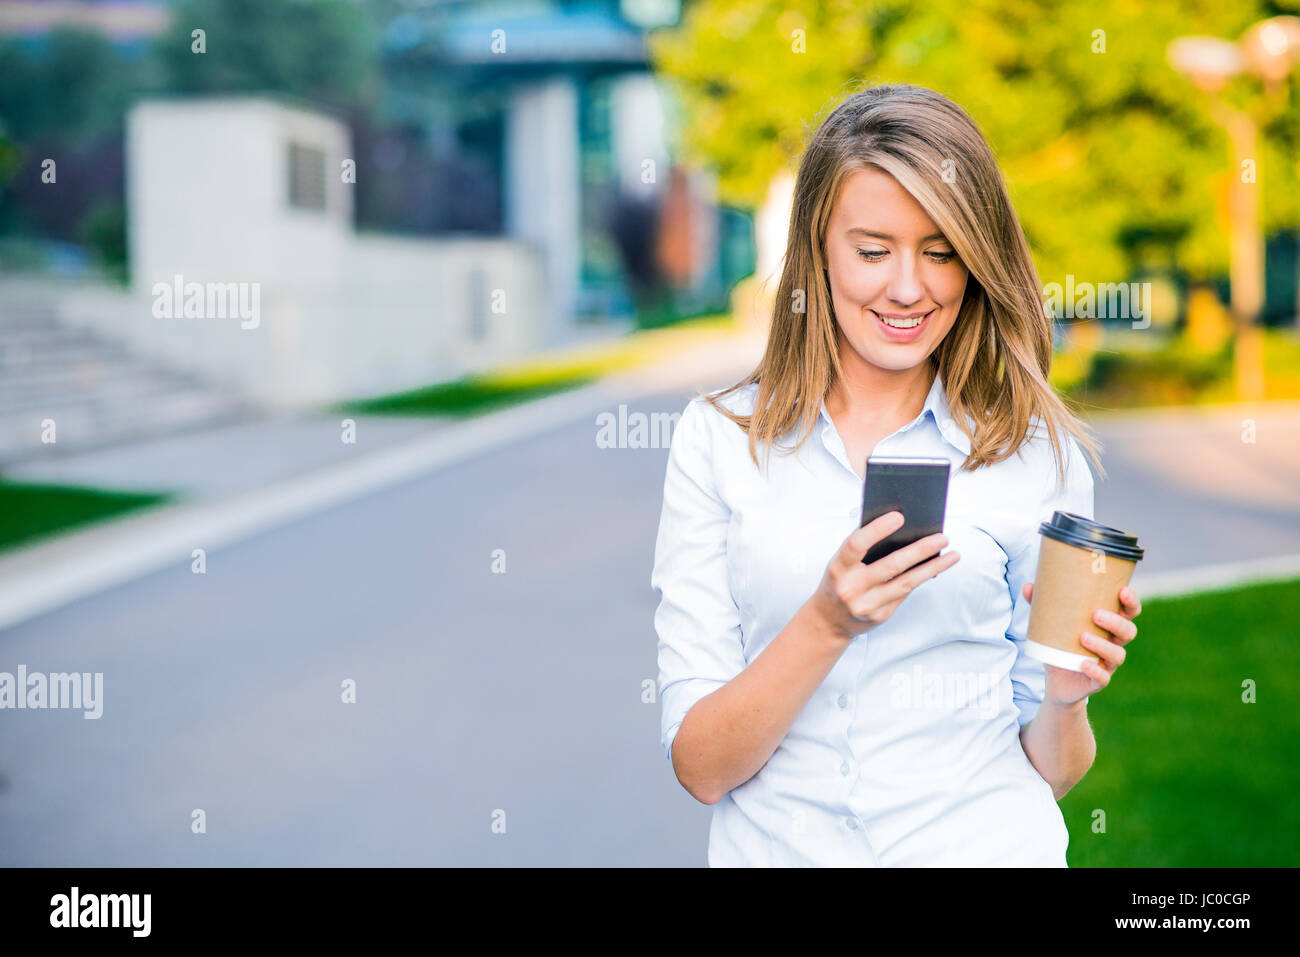 Junge intelligente berufstätige Frau mit Telefon zu lesen. Weibliche Unternehmerin Nachrichten oder SMS Sms auf Smartphone beim Kaffeetrinken auf Pause vom lesen Stockfoto